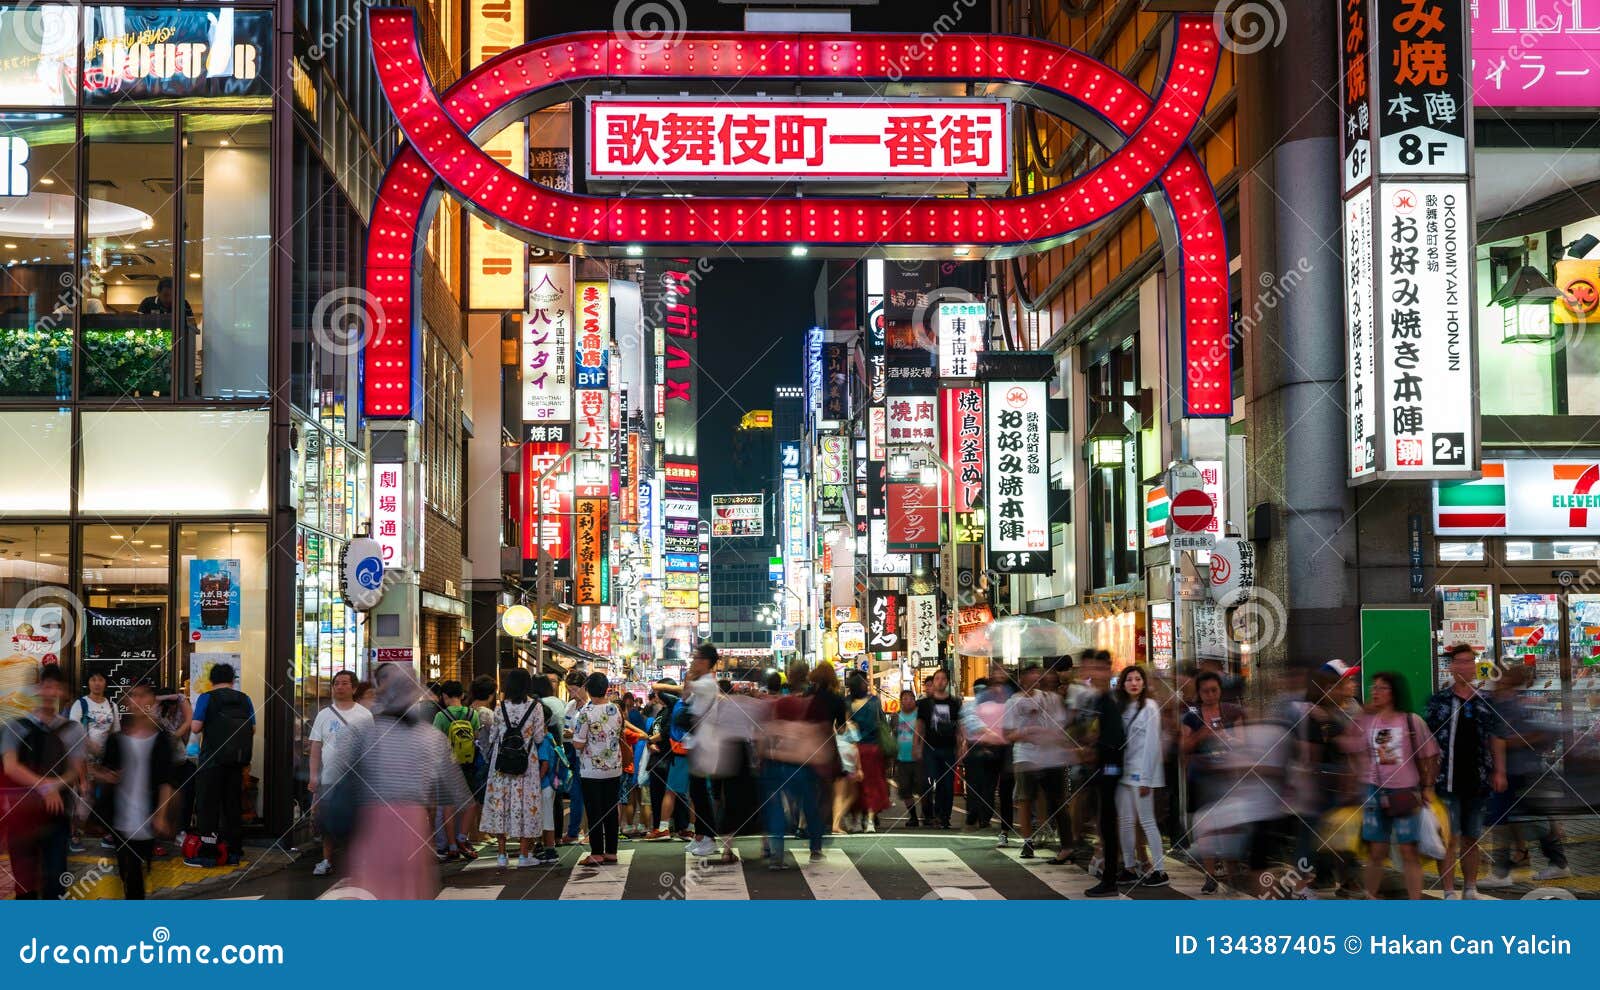 人长的曝光照片kabukicho的在新宿 娱乐和红灯区 东京 日本编辑类